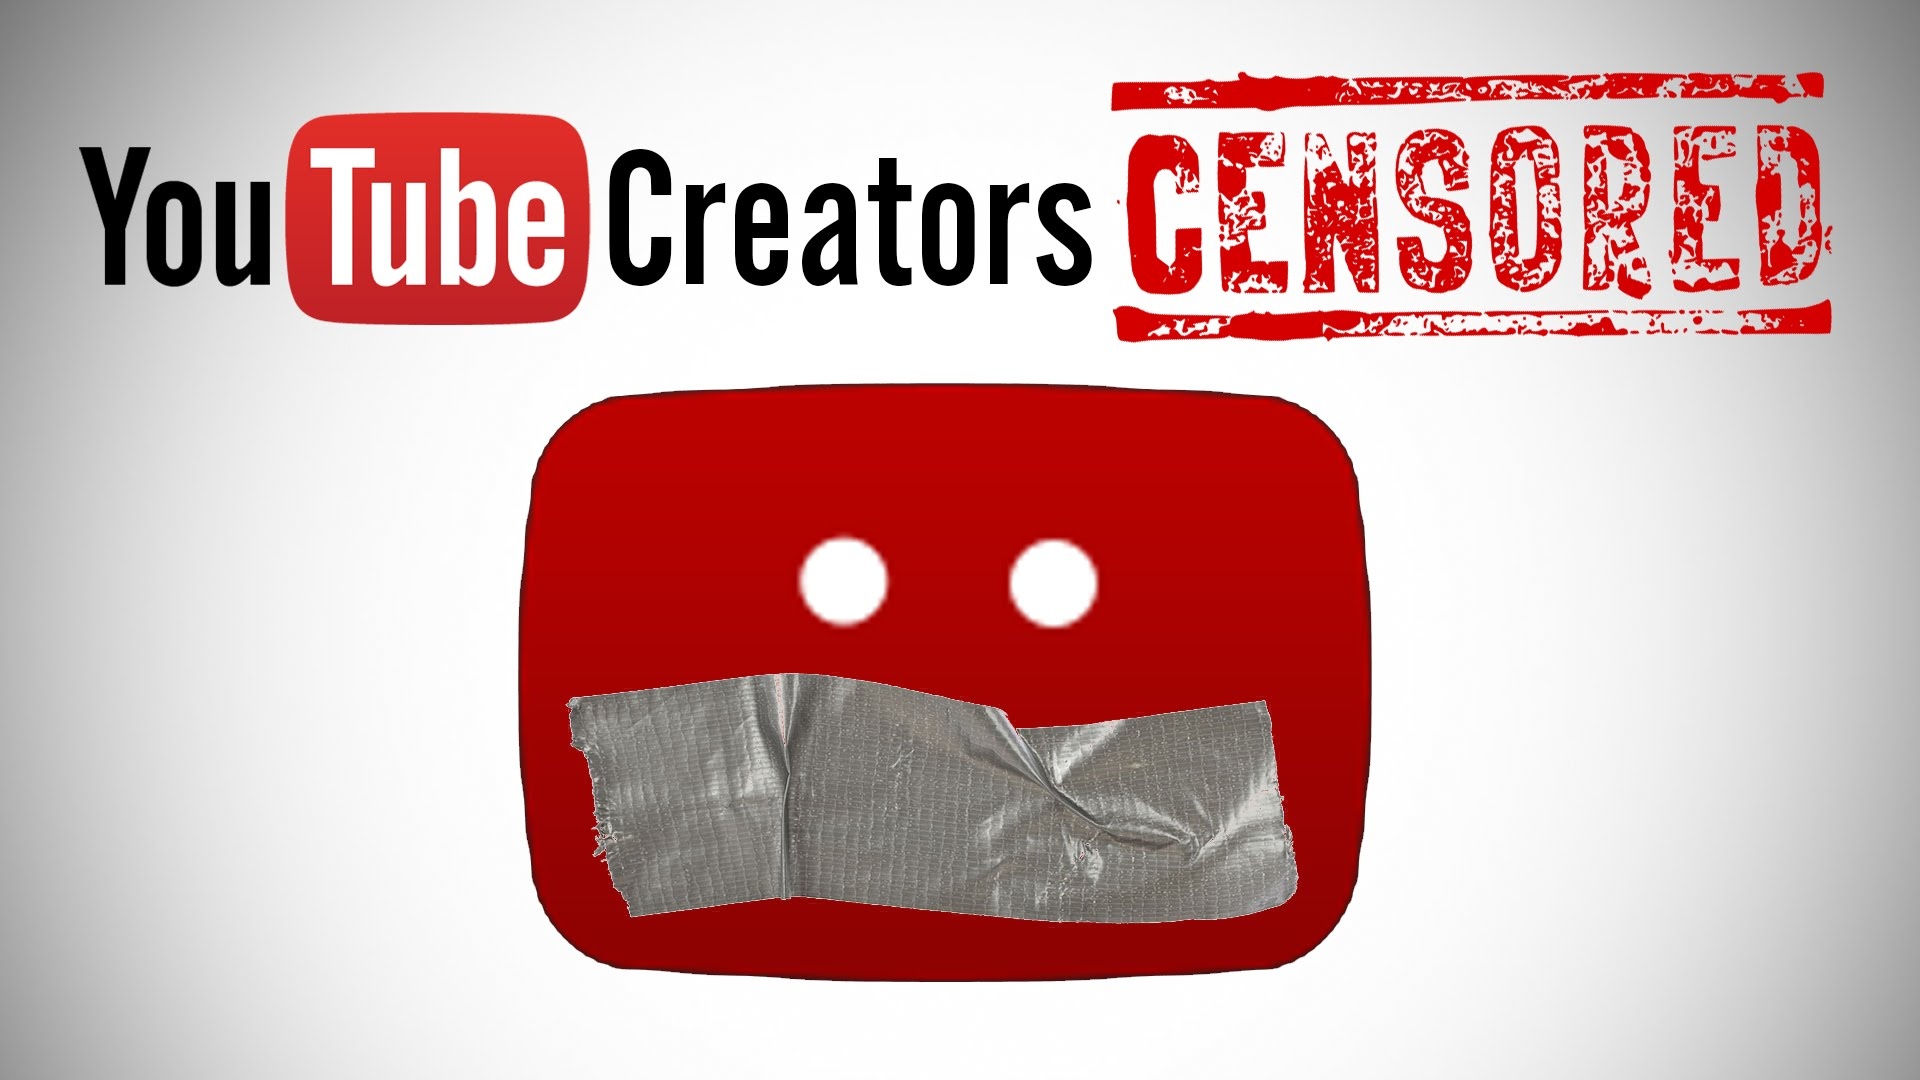 Censor youtuber